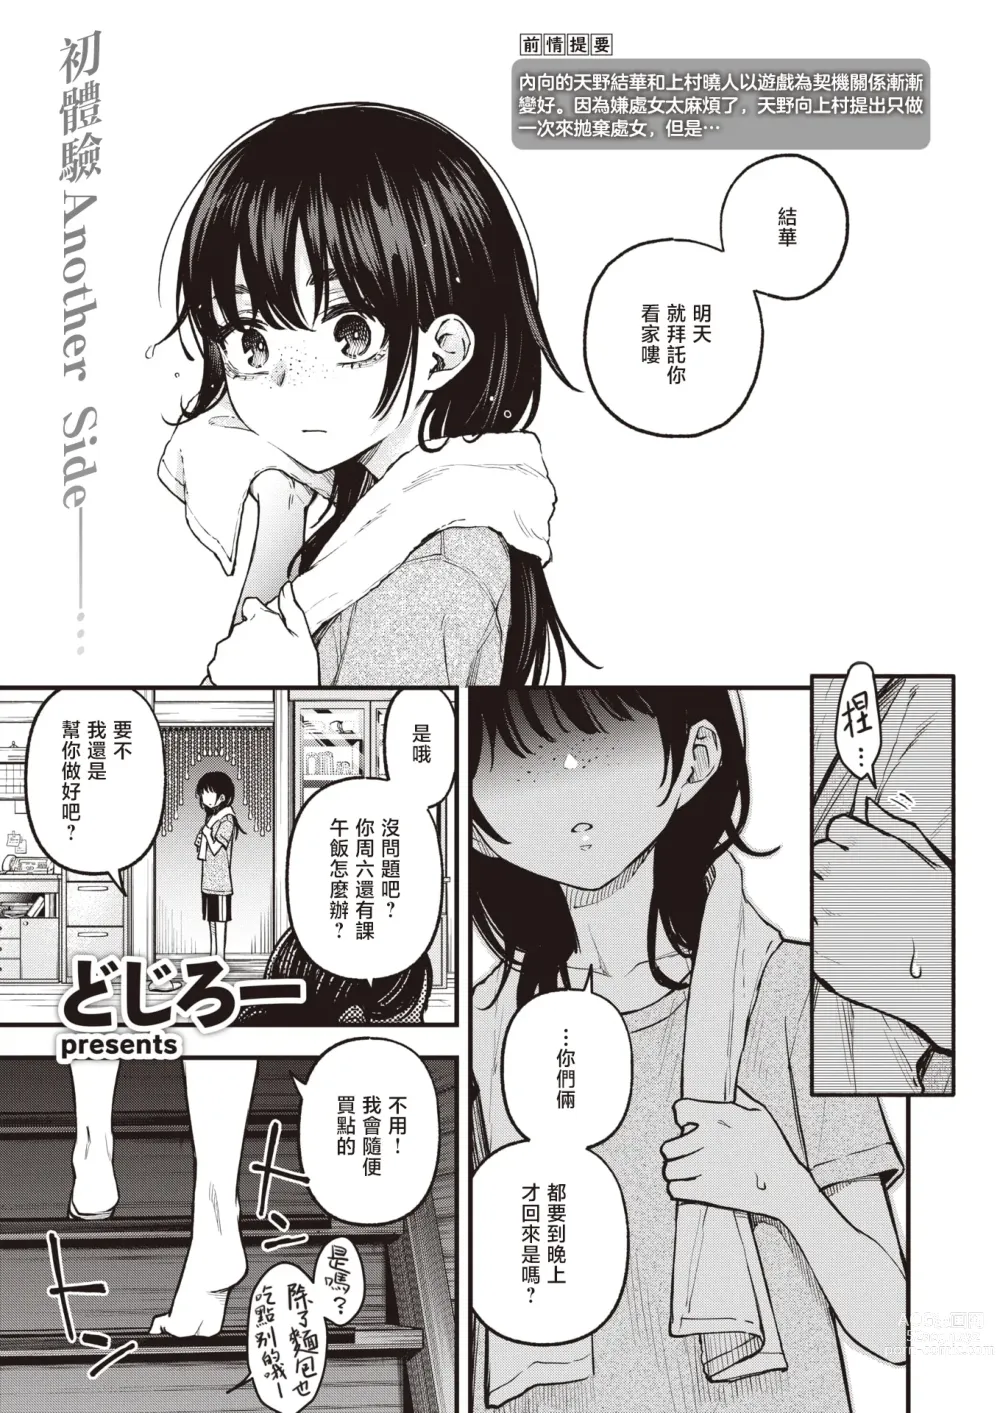 Page 2 of manga 内向友人的性爱才是最具风情的呢#2 -天野结华Side-